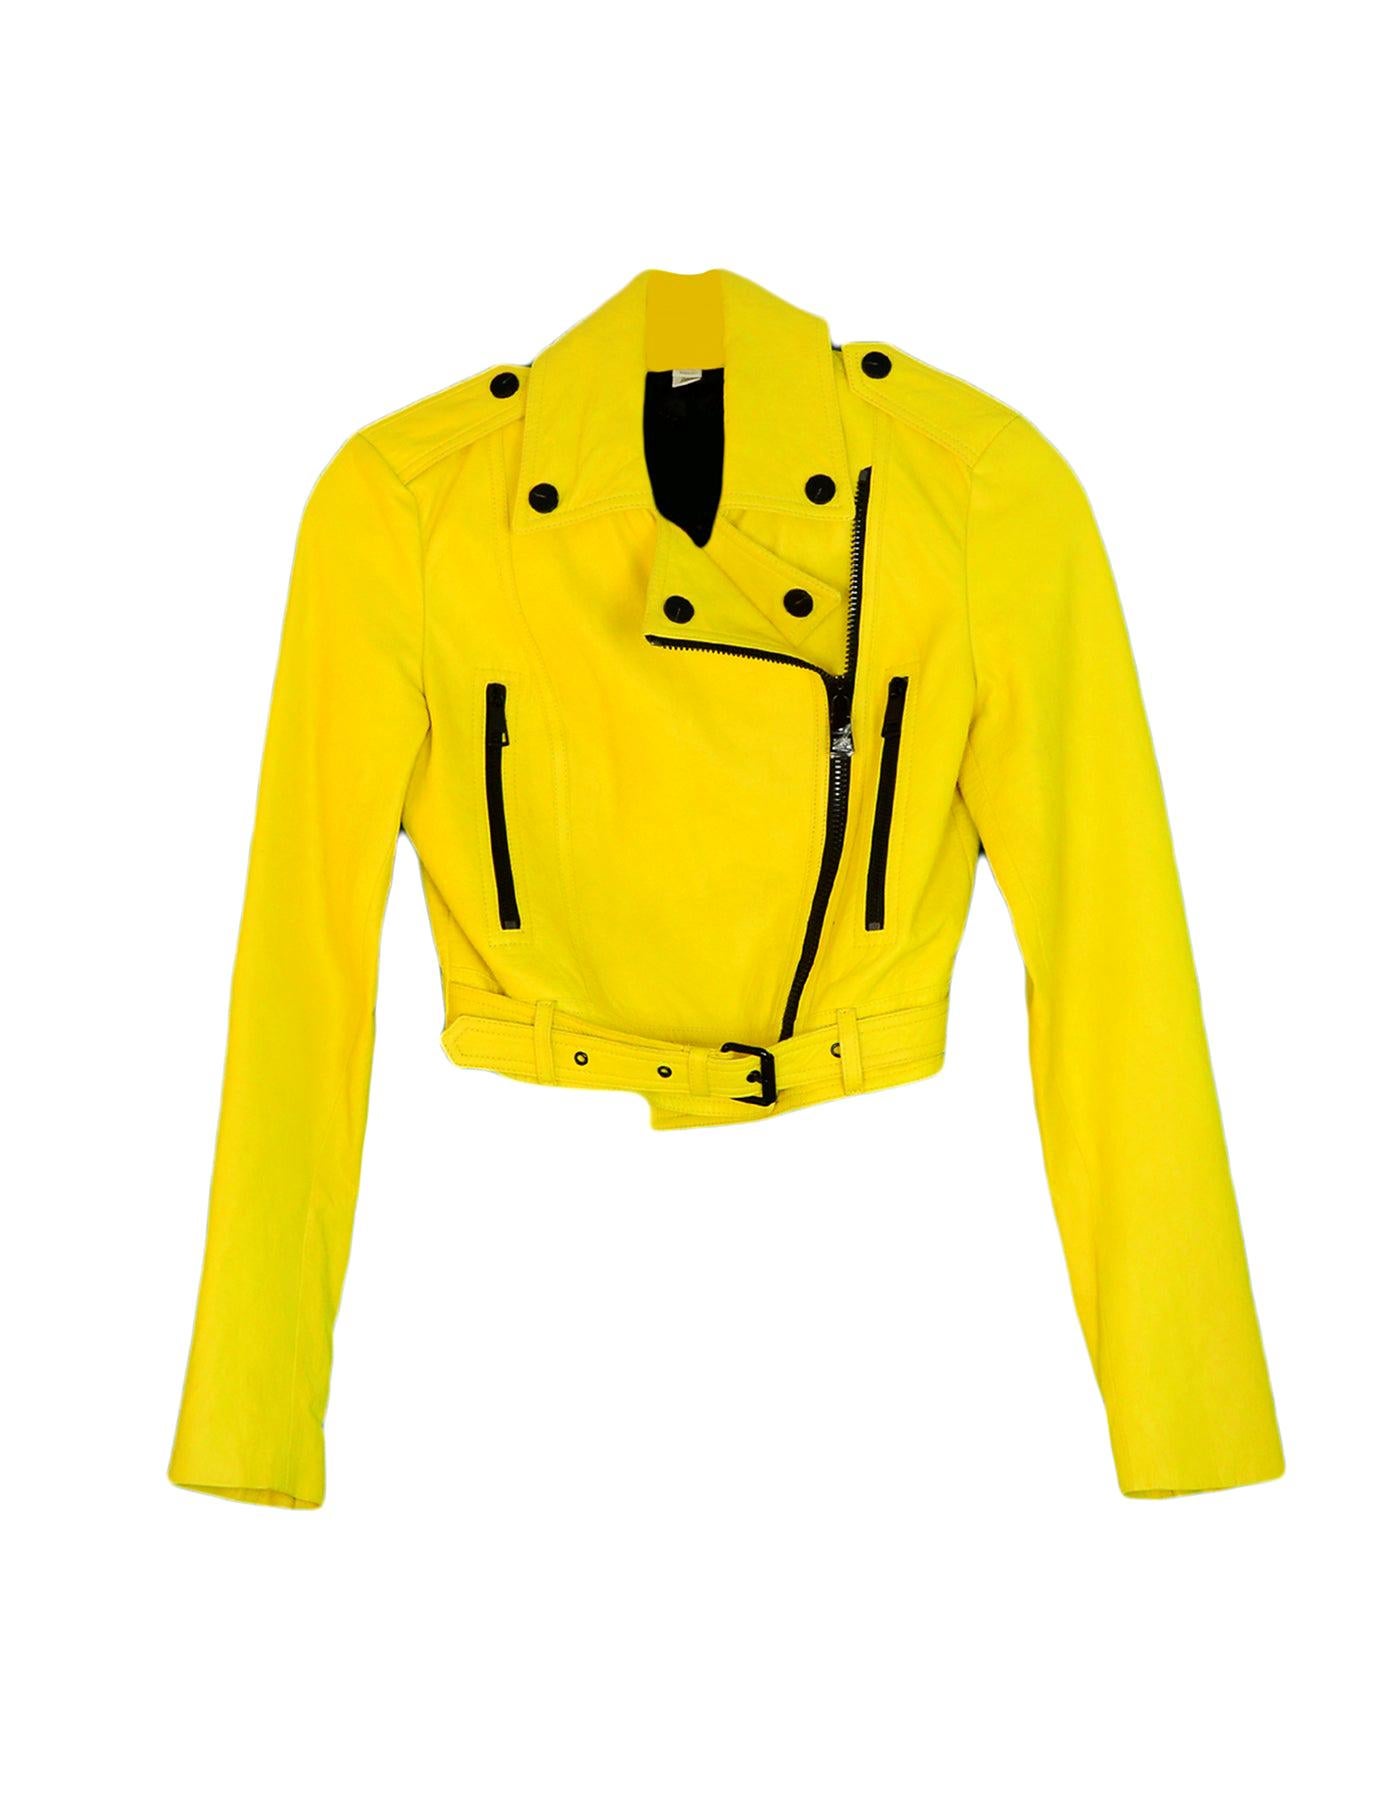 burberry jacket yellow